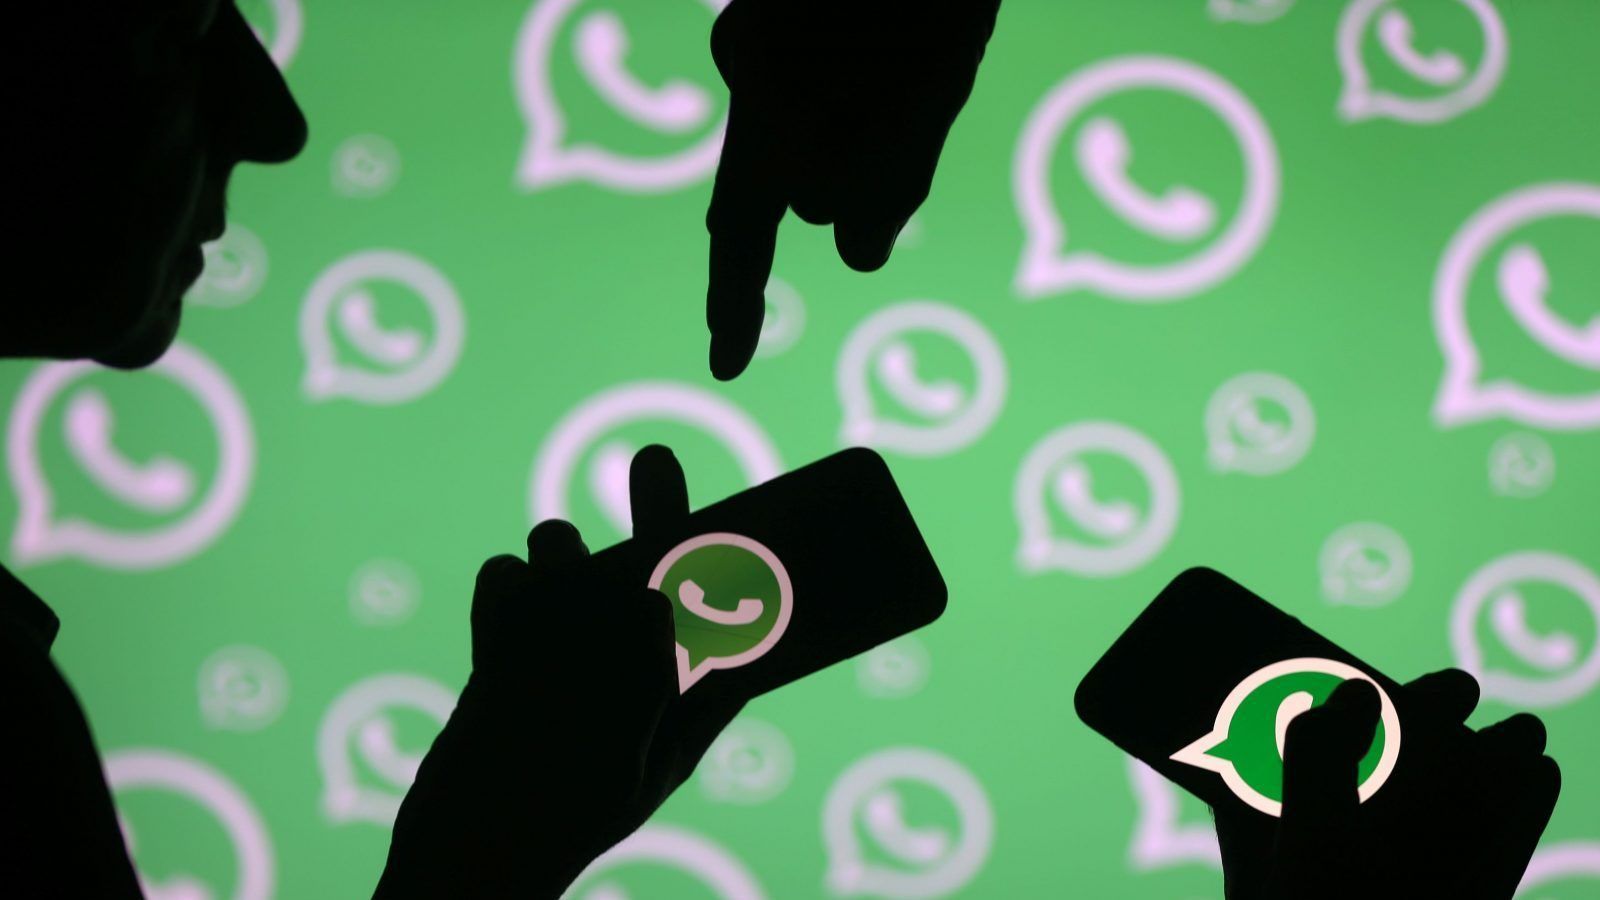 La vulnerabilidad de WhatsApp permite a los piratas informáticos interceptar y manipular mensajes para difundir noticias falsas